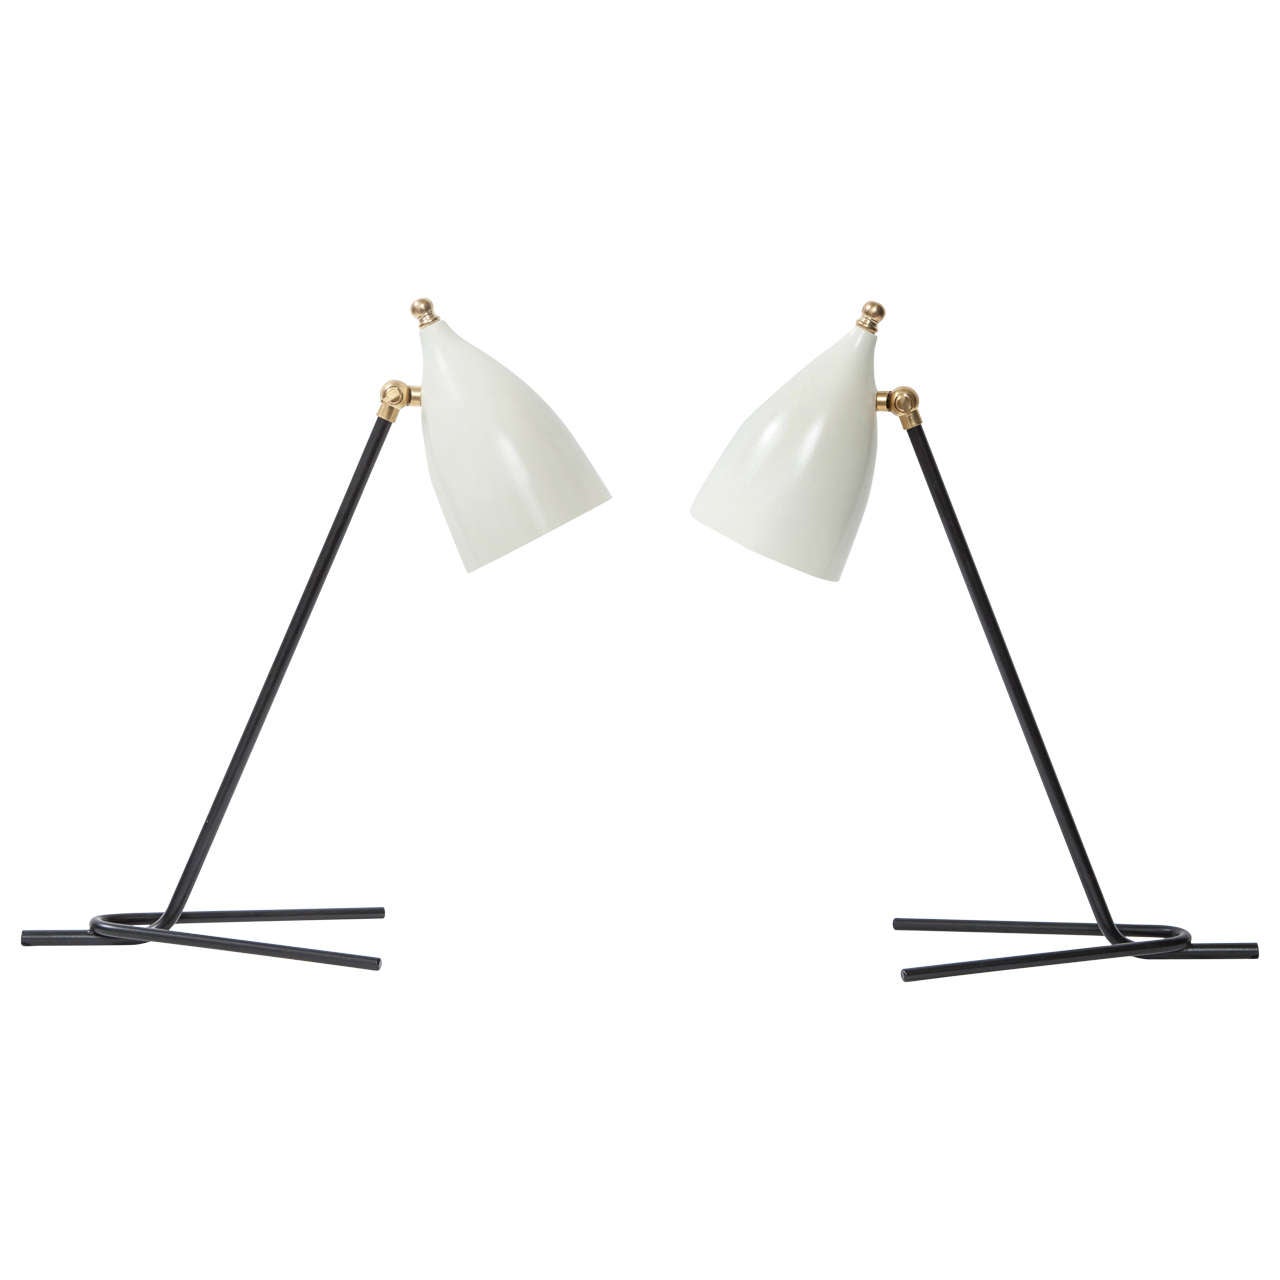 Pair of Articulating Italian Desk Lamps